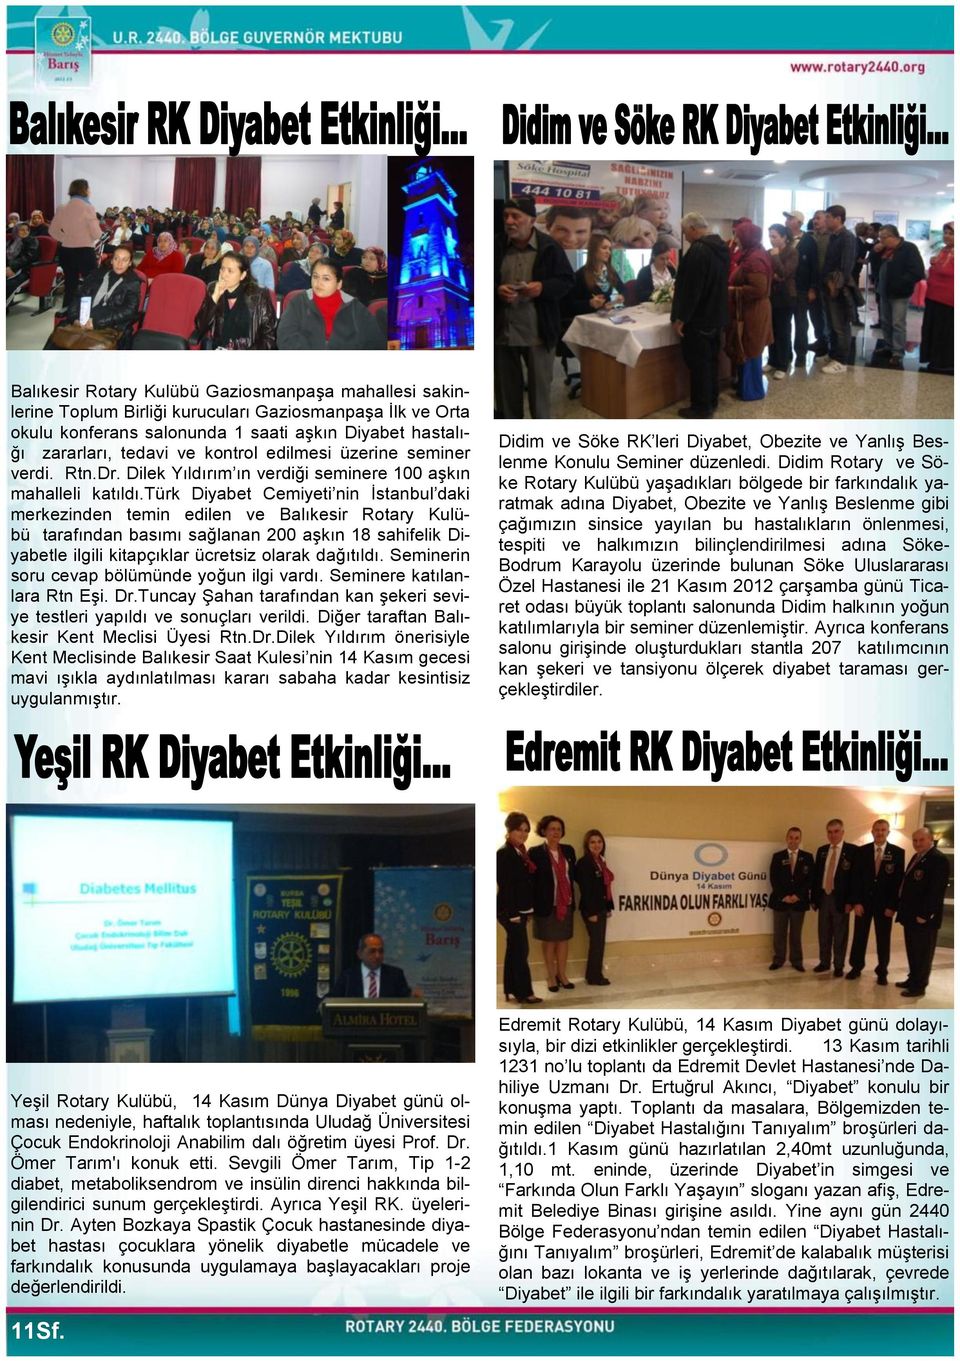 türk Diyabet Cemiyeti nin Ġstanbul daki merkezinden temin edilen ve Balıkesir Rotary Kulübü tarafından basımı sağlanan 200 aģkın 18 sahifelik Diyabetle ilgili kitapçıklar ücretsiz olarak dağıtıldı.